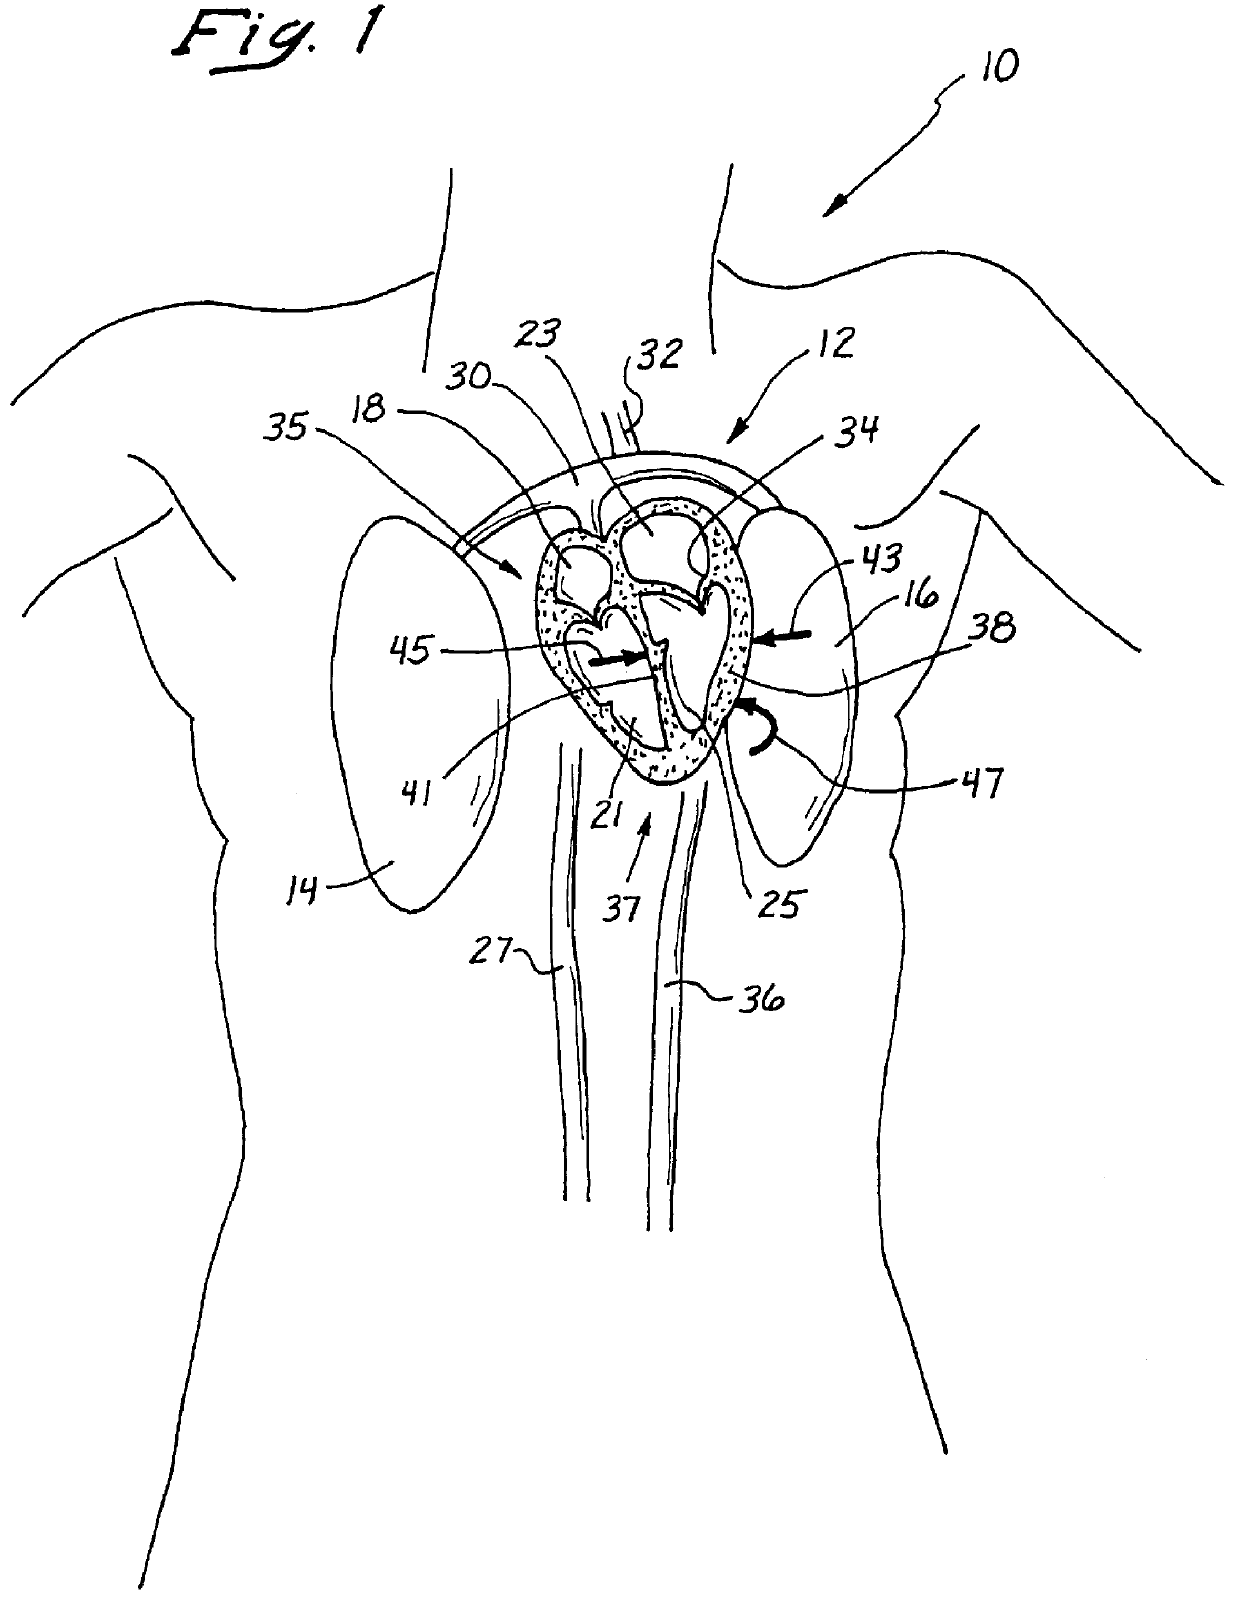 Anterior segment ventricular restoration apparatus and method